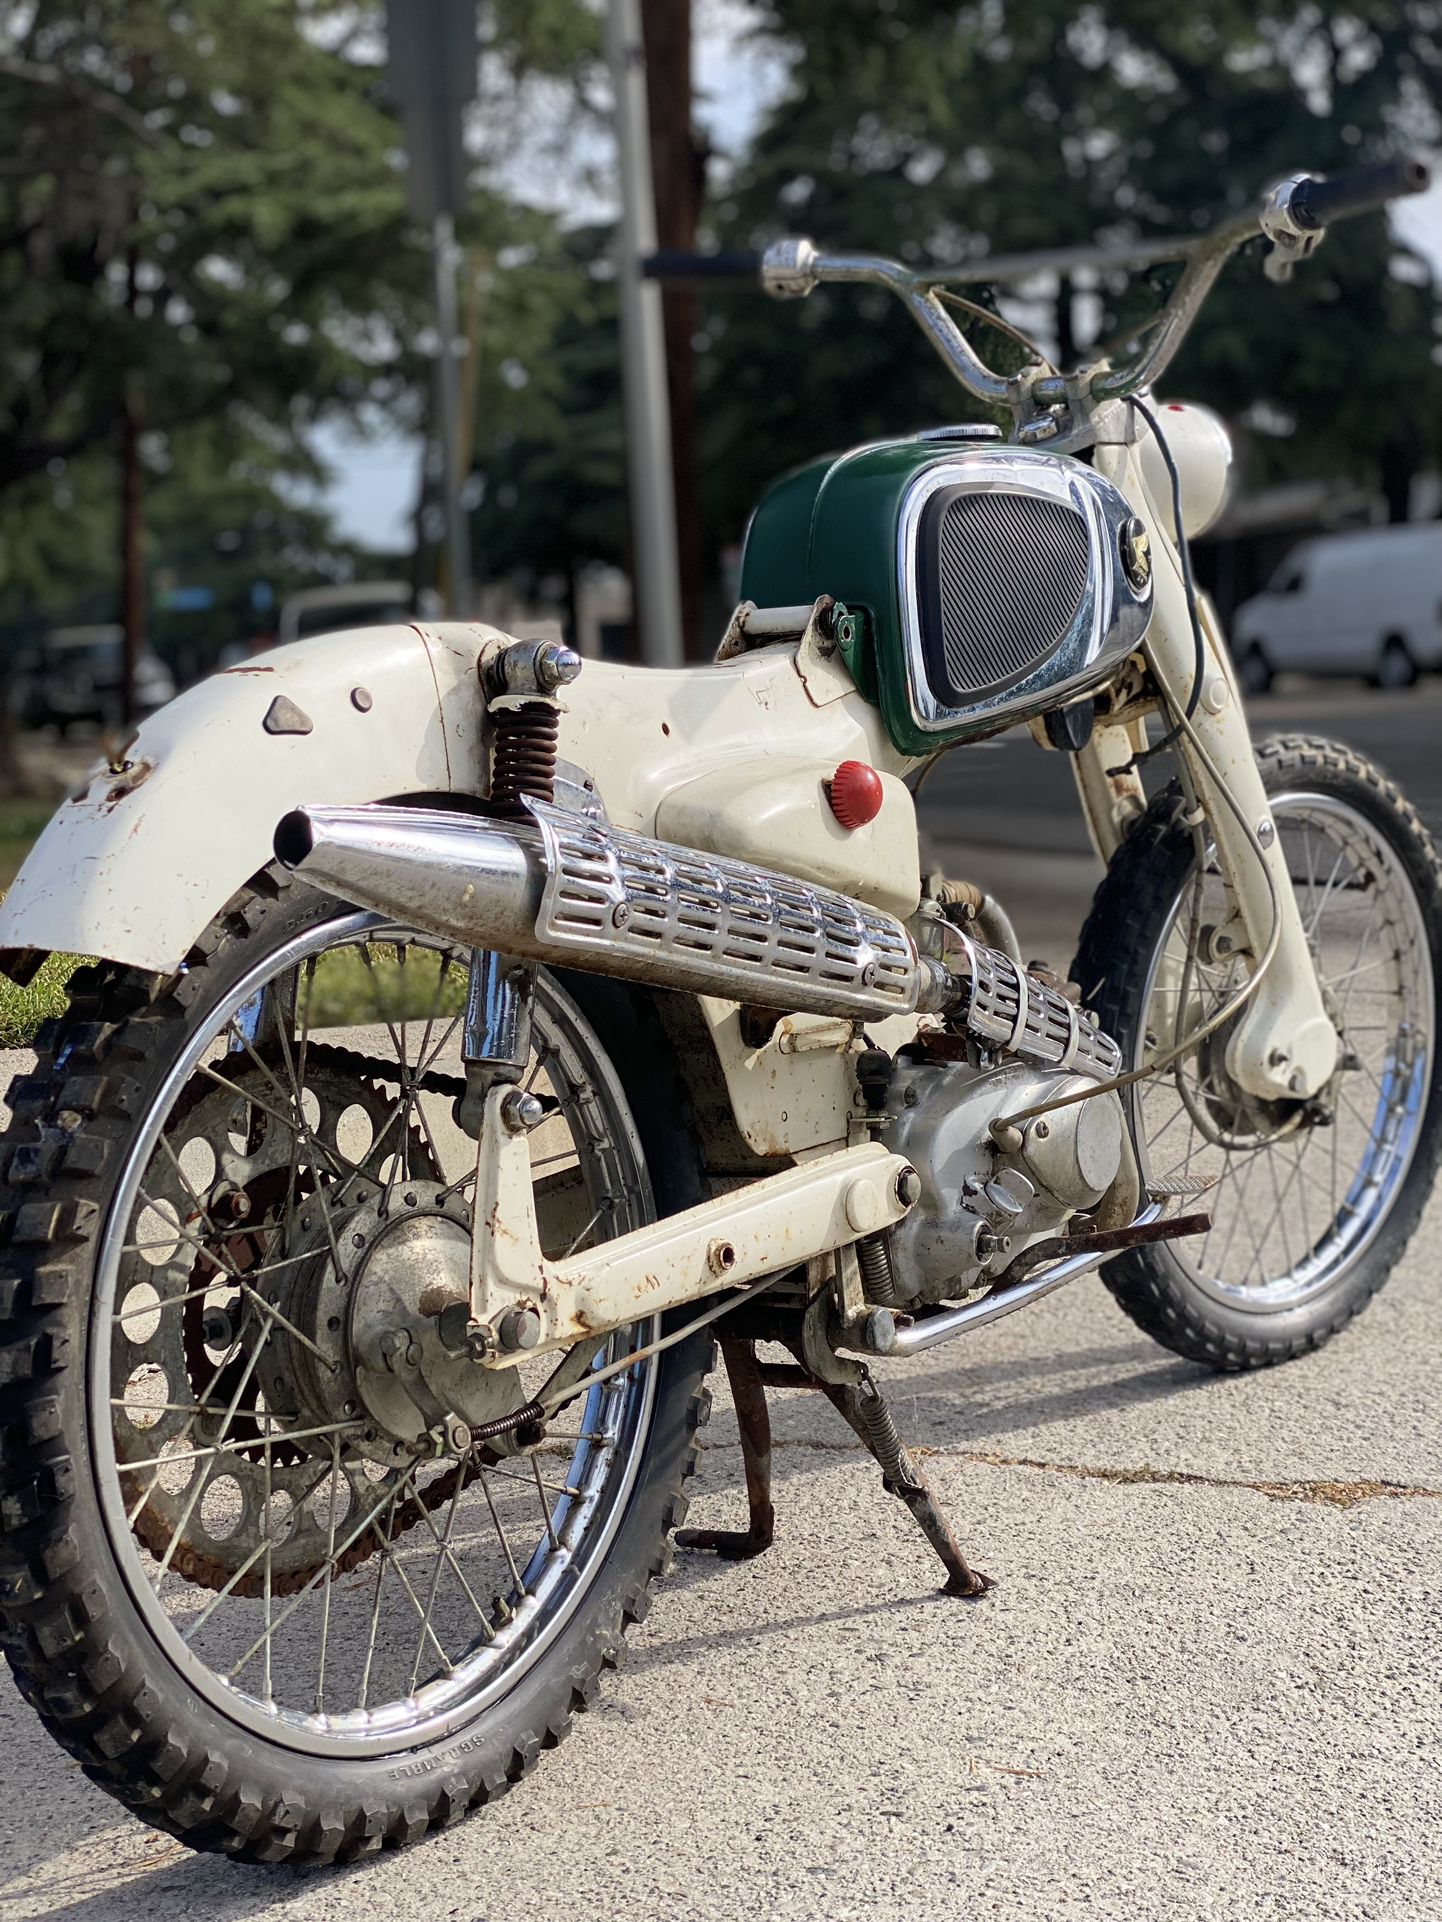 1965 Honda Sport 50 Vintage Cafe racer Motorcycle 